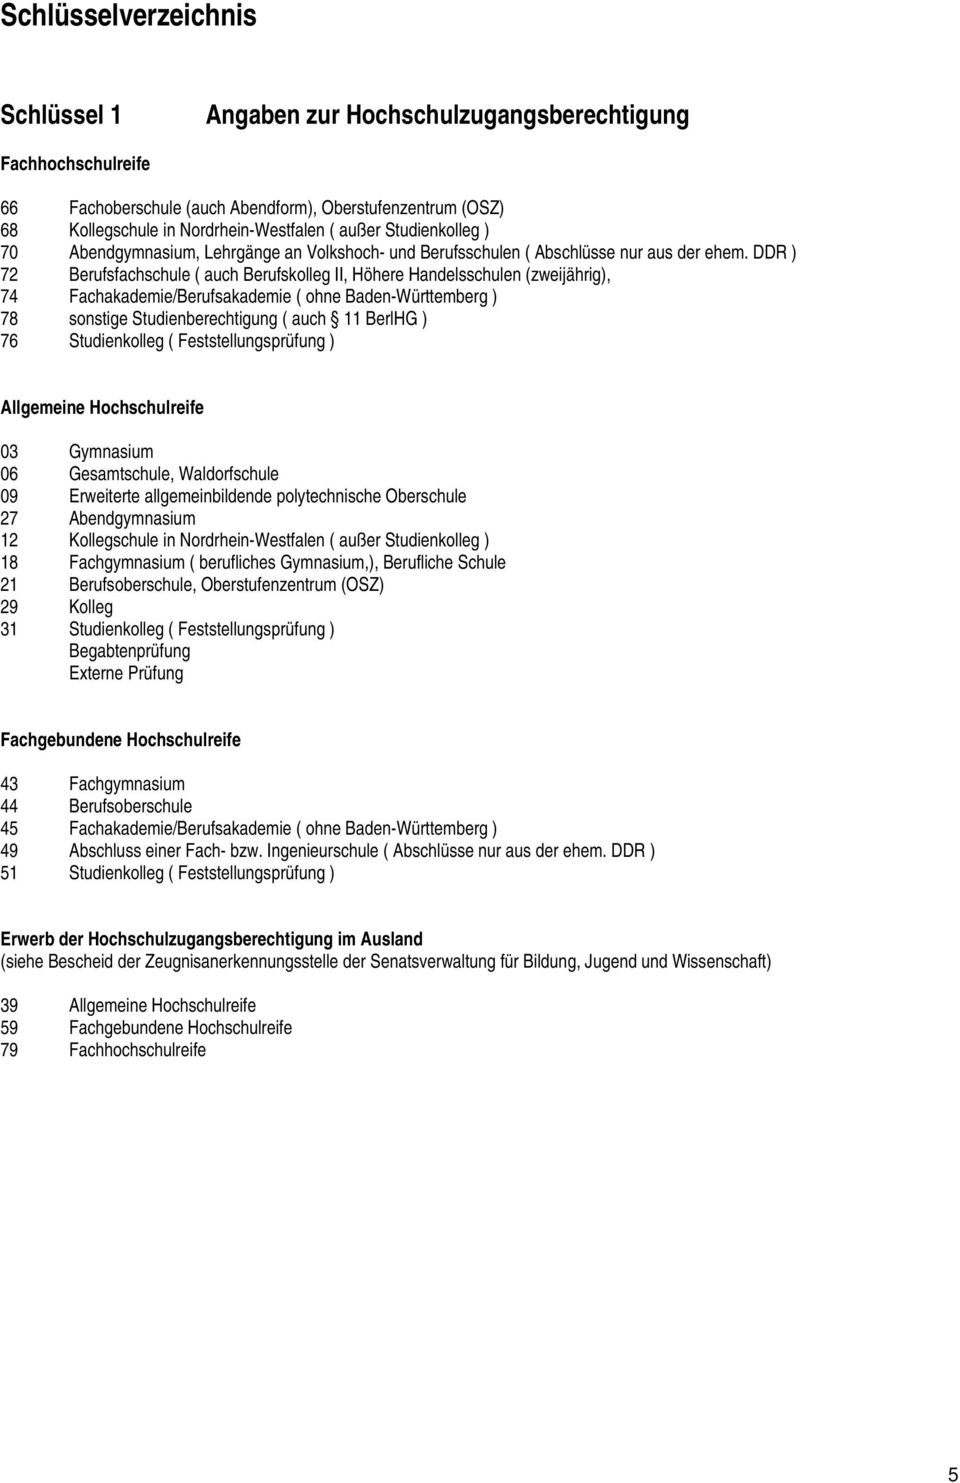 DDR ) 72 Berufsfachschule ( auch Berufskolleg II, Höhere Handelsschulen (zweijährig), 74 Fachakademie/Berufsakademie ( ohne Baden-Württemberg ) 78 sonstige Studienberechtigung ( auch 11 BerlHG ) 76